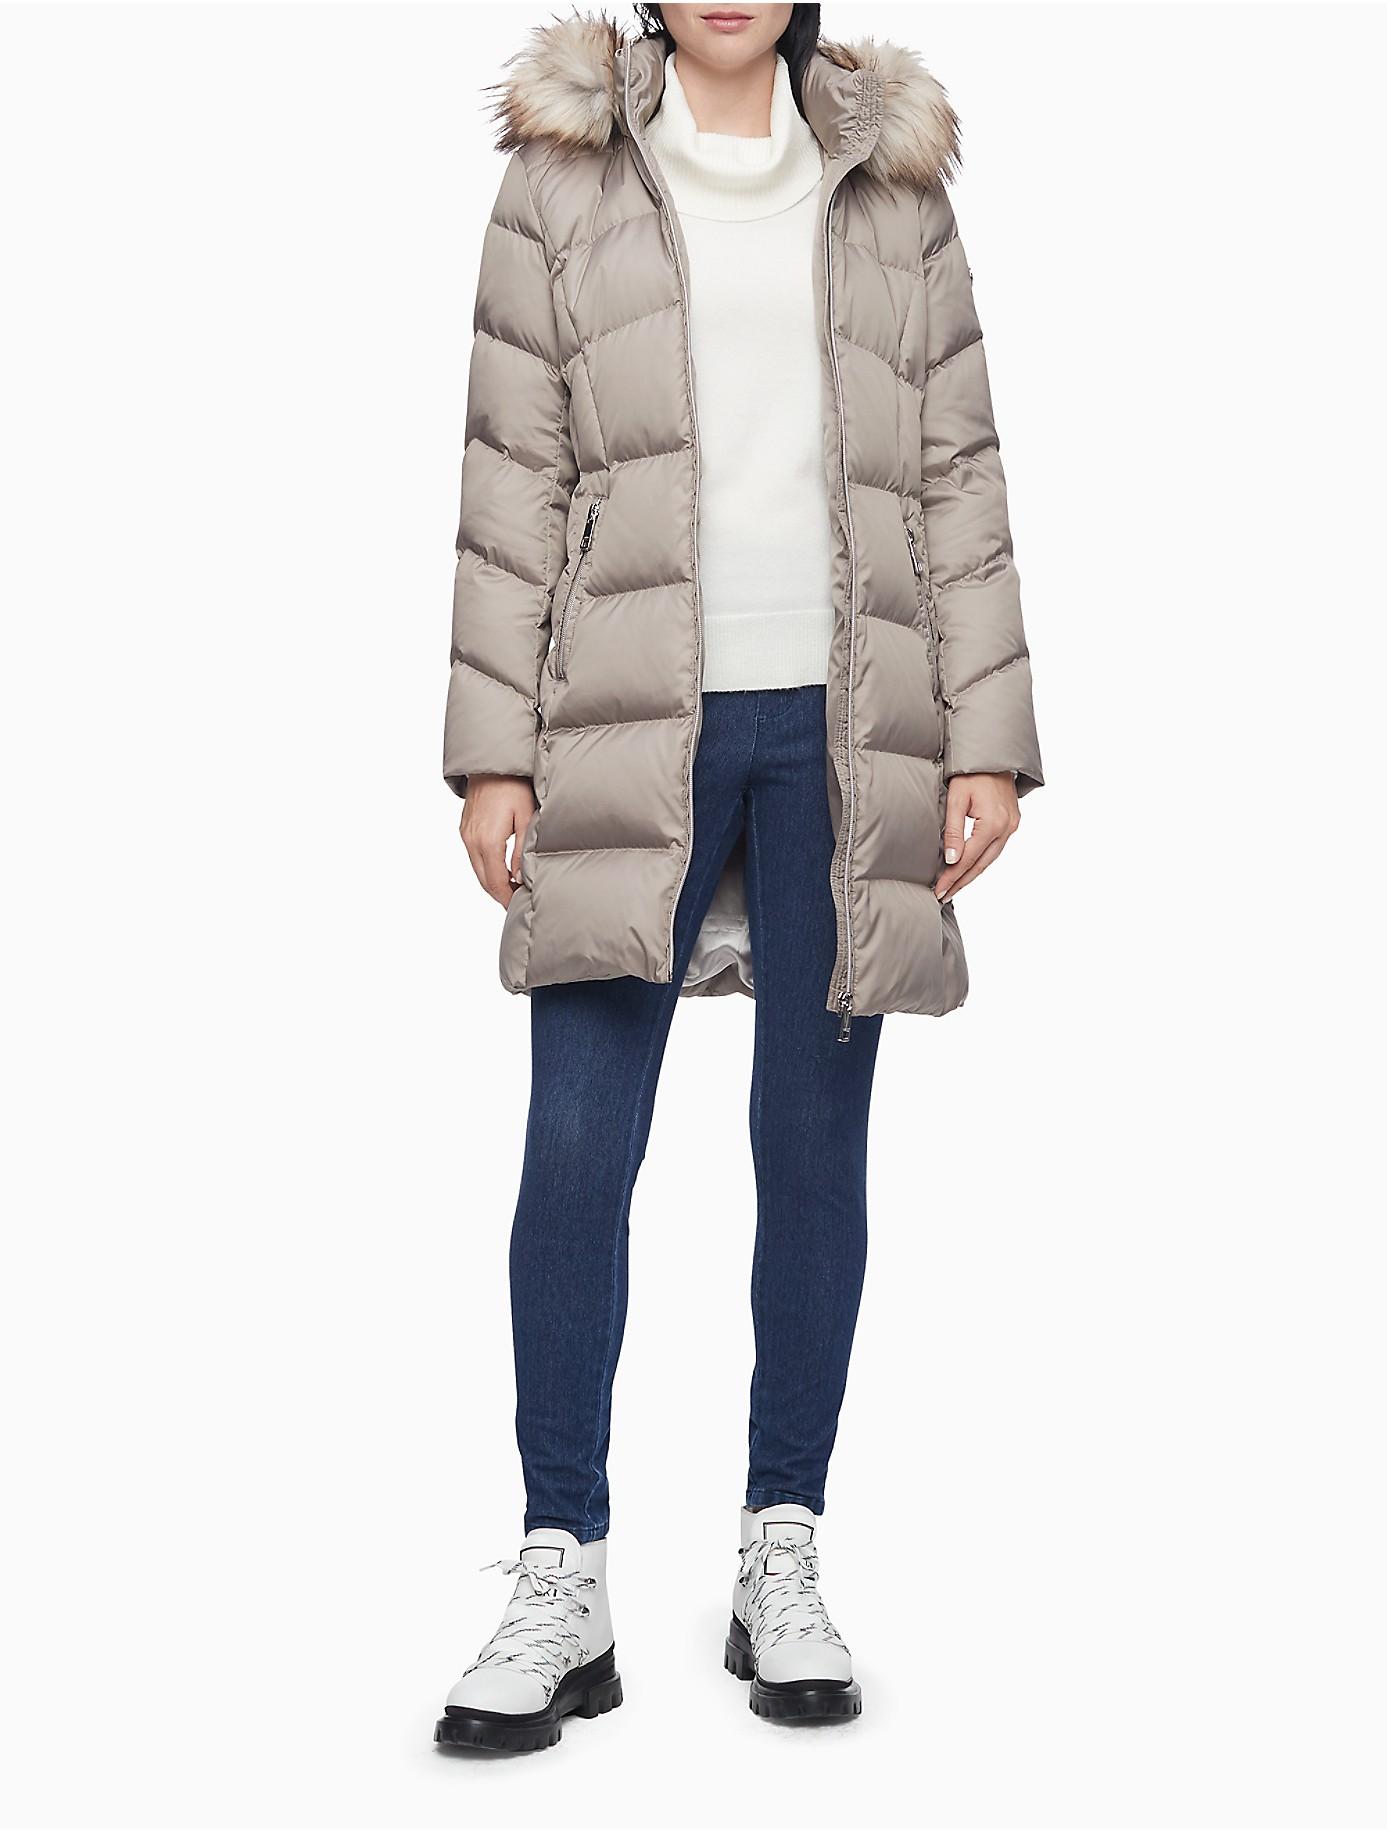 Introducir 62+ imagen calvin klein winter coat with fur hood